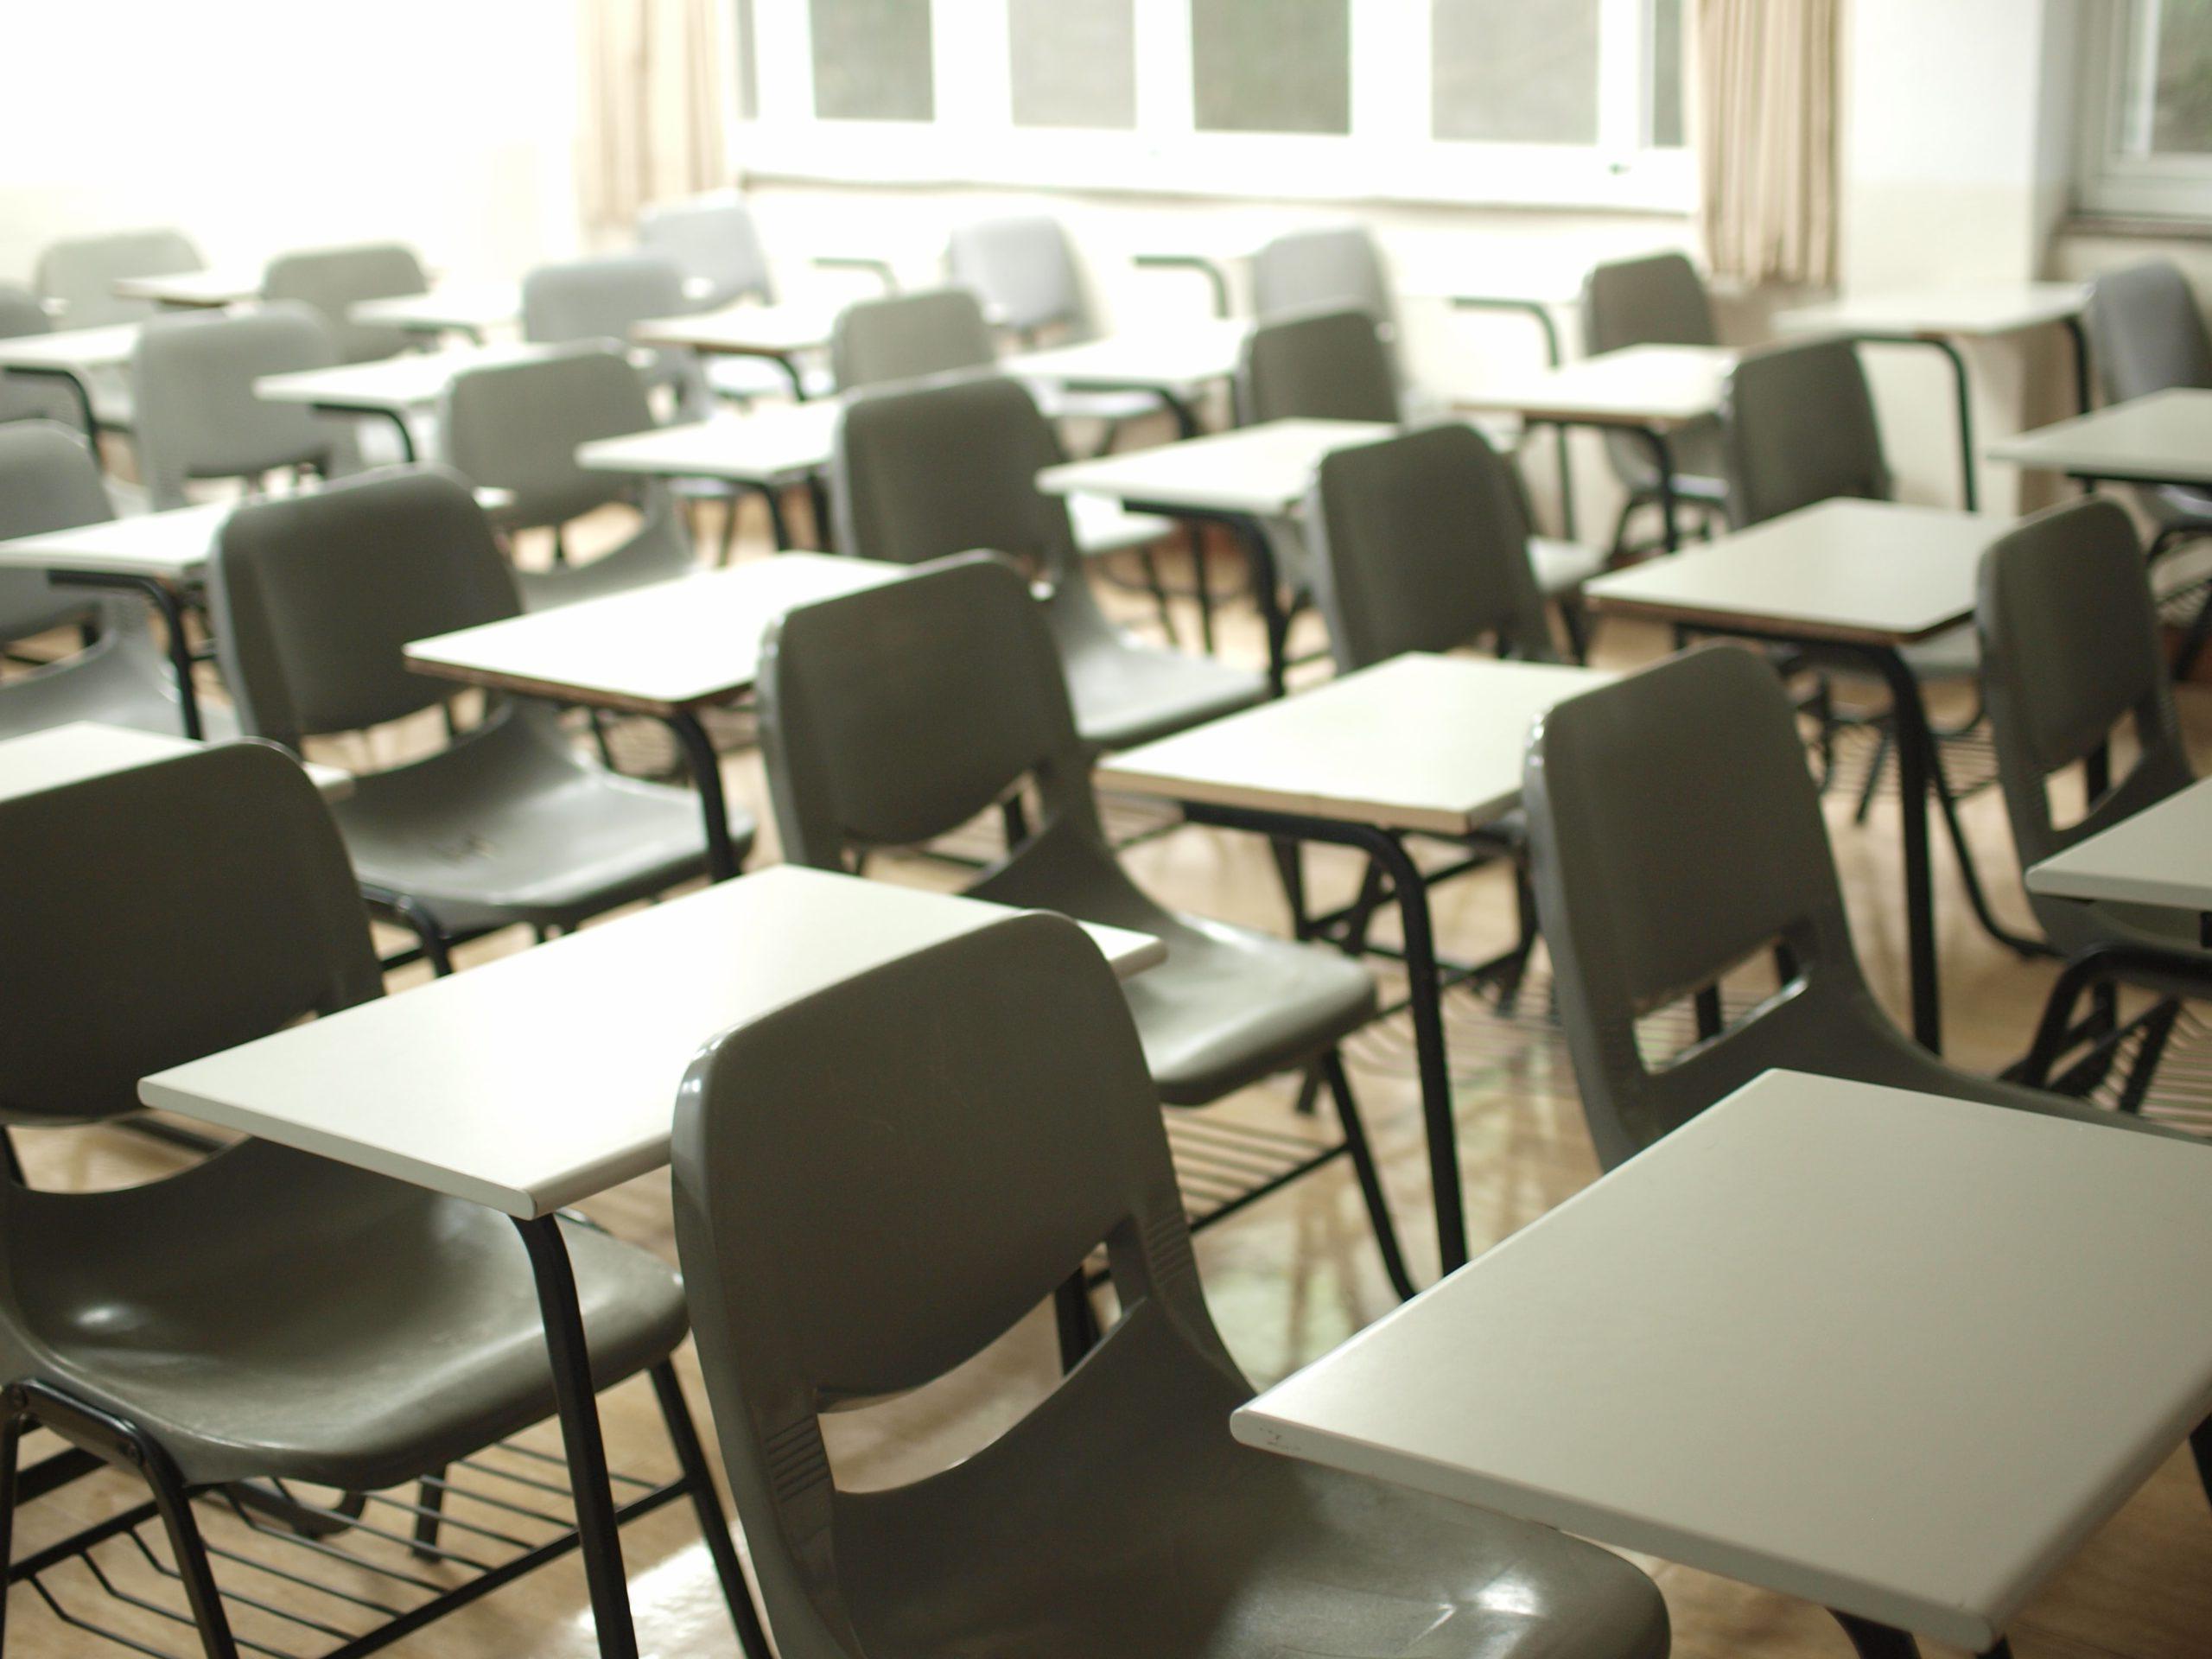 教室里一排排的空课桌椅